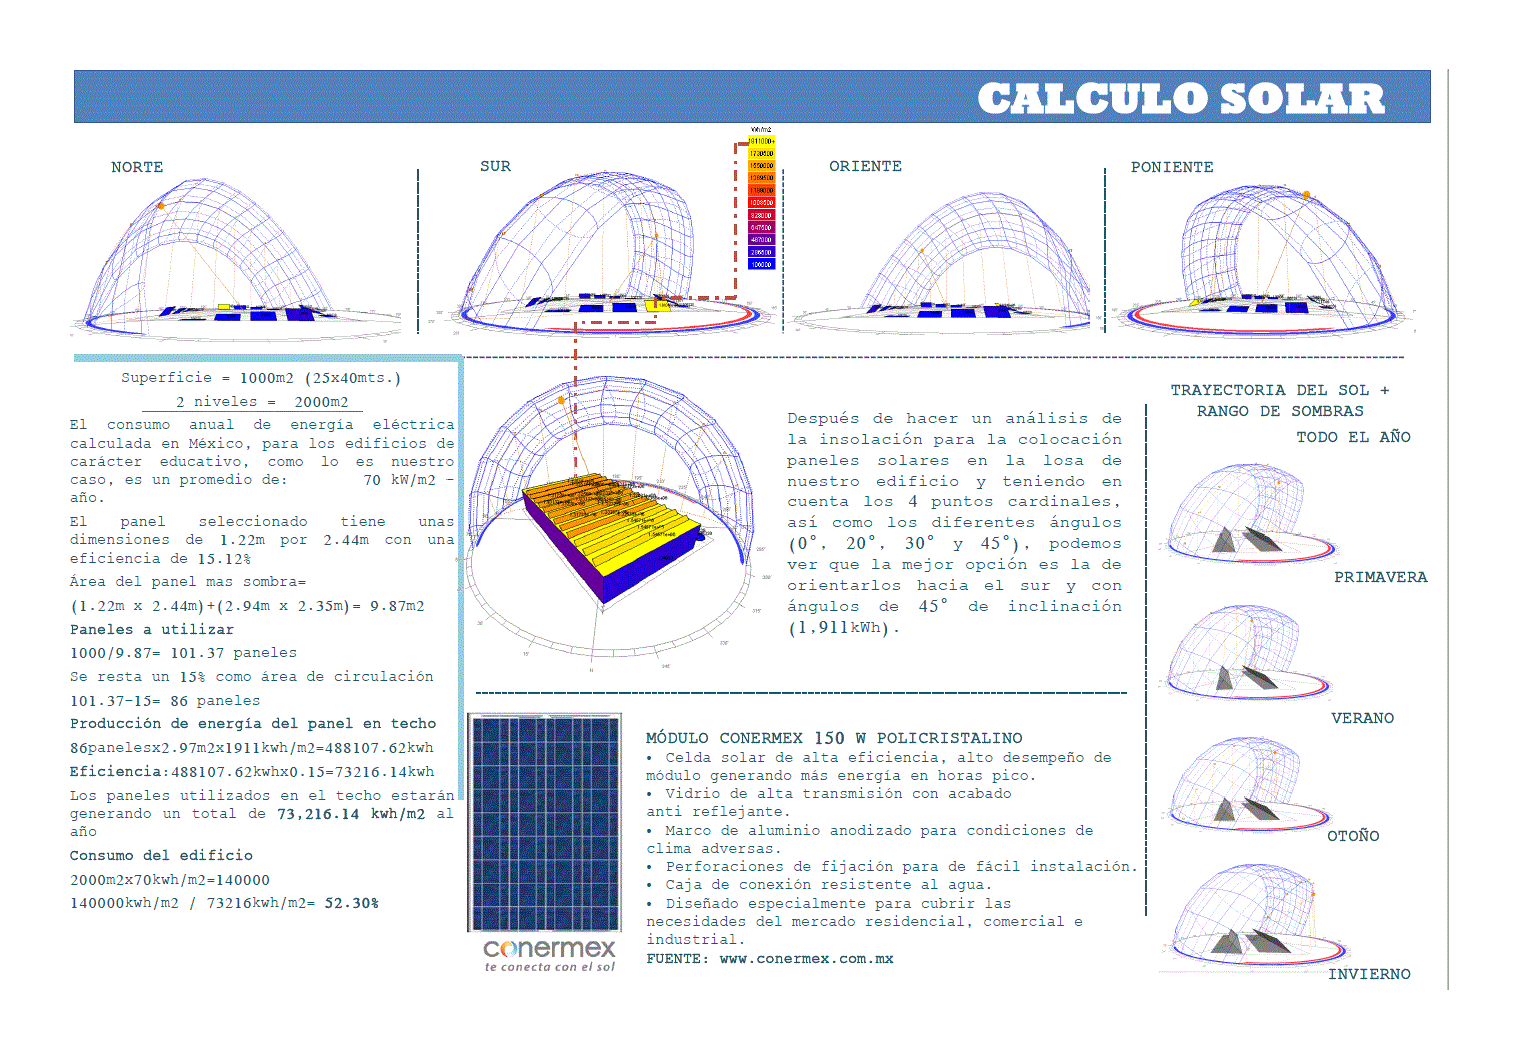 Solar calculation - Mexico